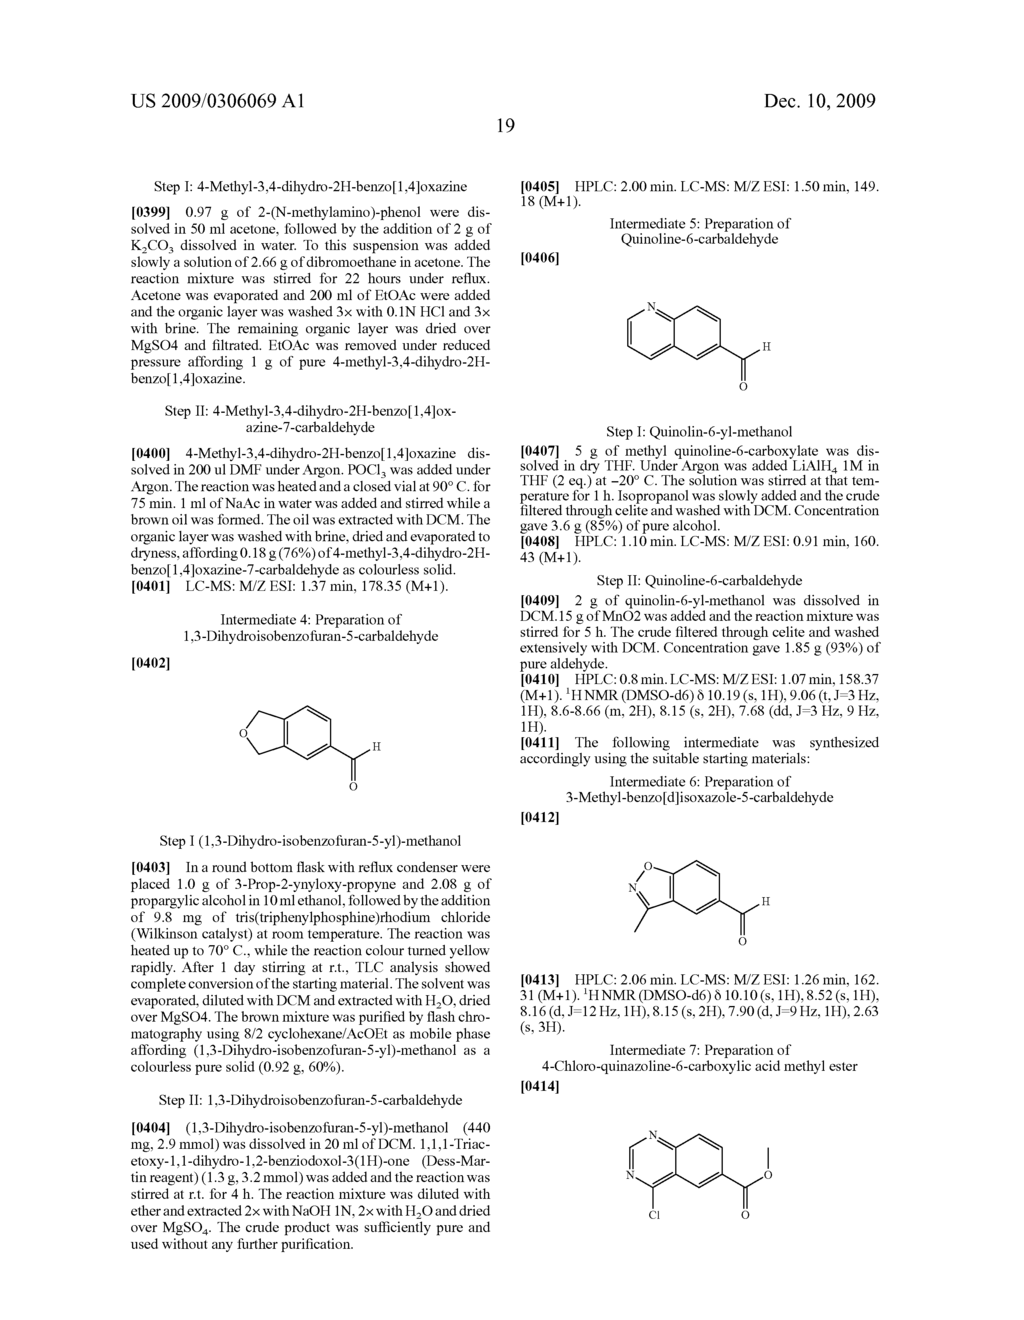 AZOLIDINONE-VINYL FUSED-BENZENE DERIVATIVES - diagram, schematic, and image 20